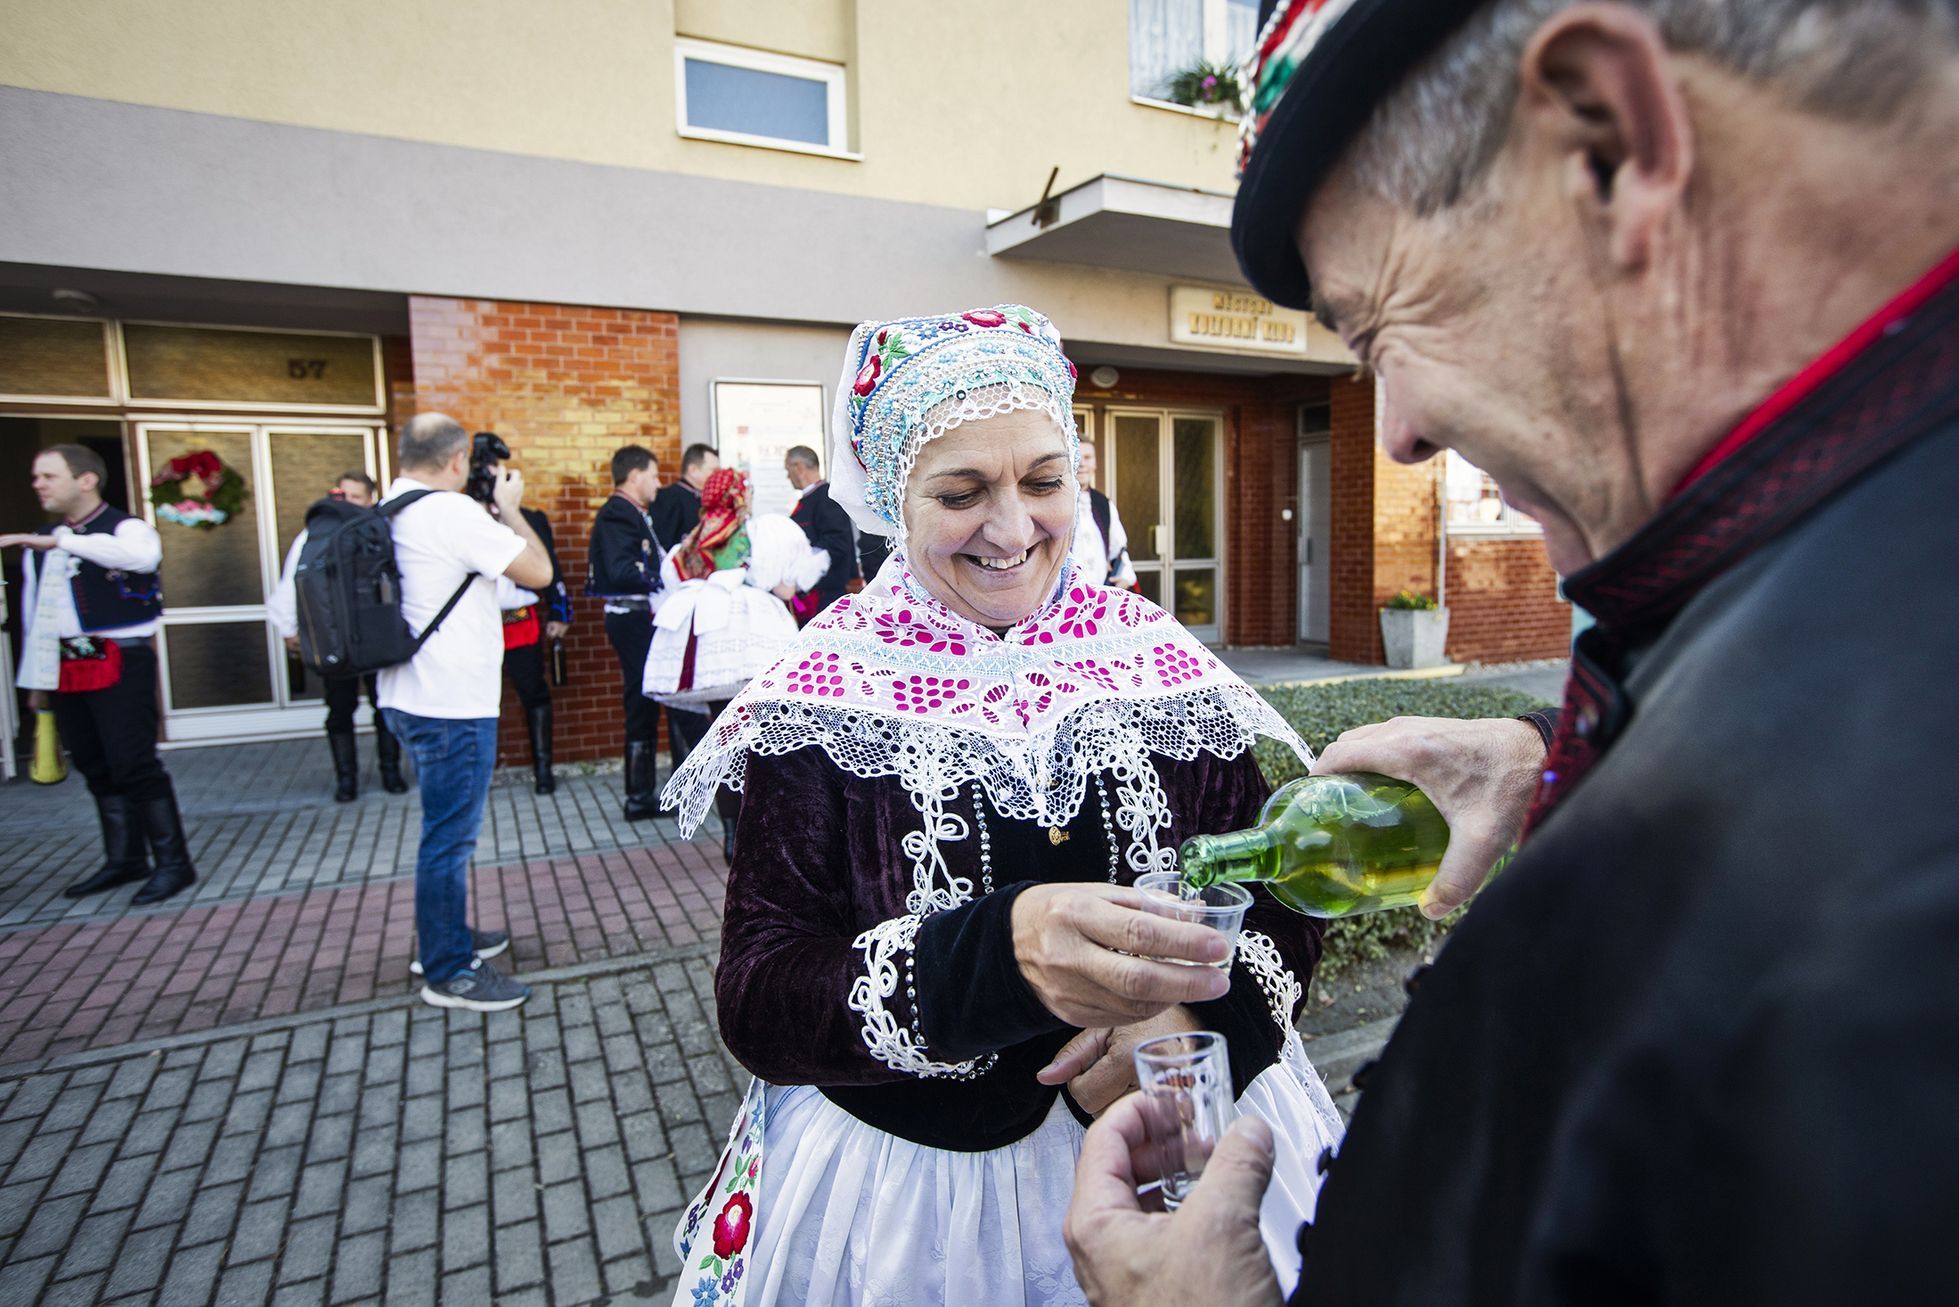 Fotogalerie / Kouzlo folklóru. Podívejte se, jak o víkendu vypadaly krojované Vracovské hody